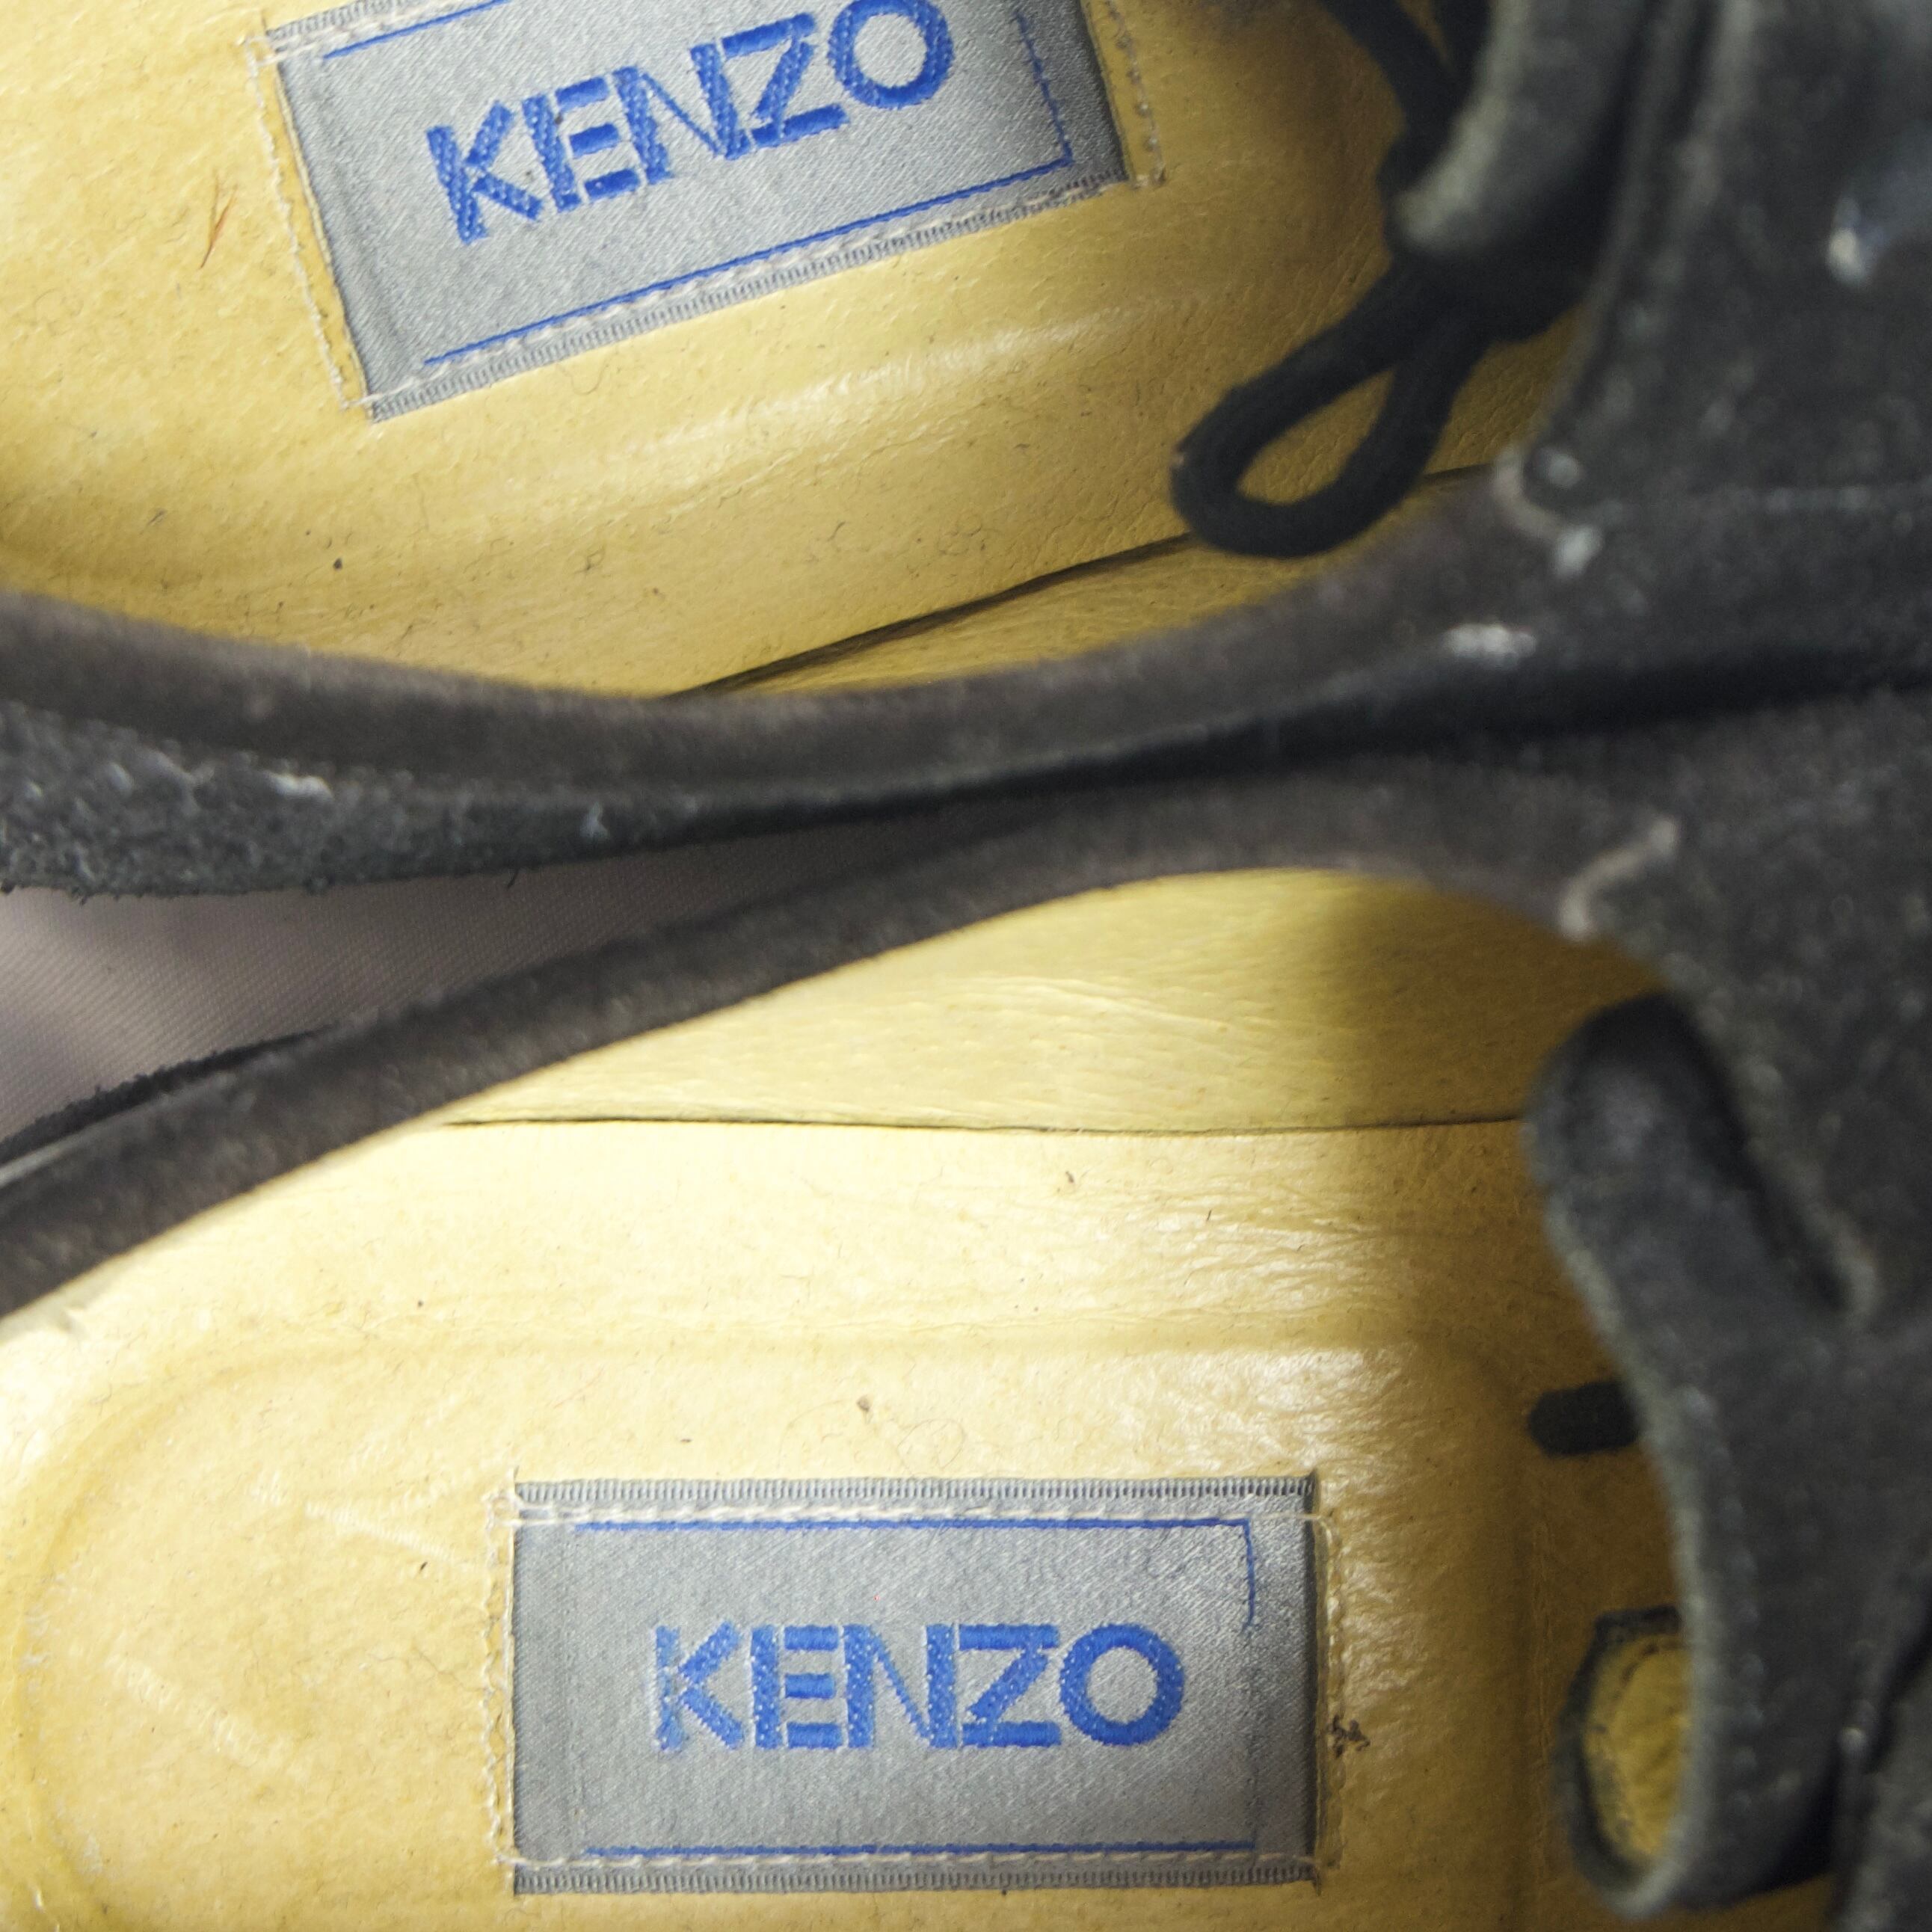 kenzo】vintage used clothing dress shoes loafer suède black